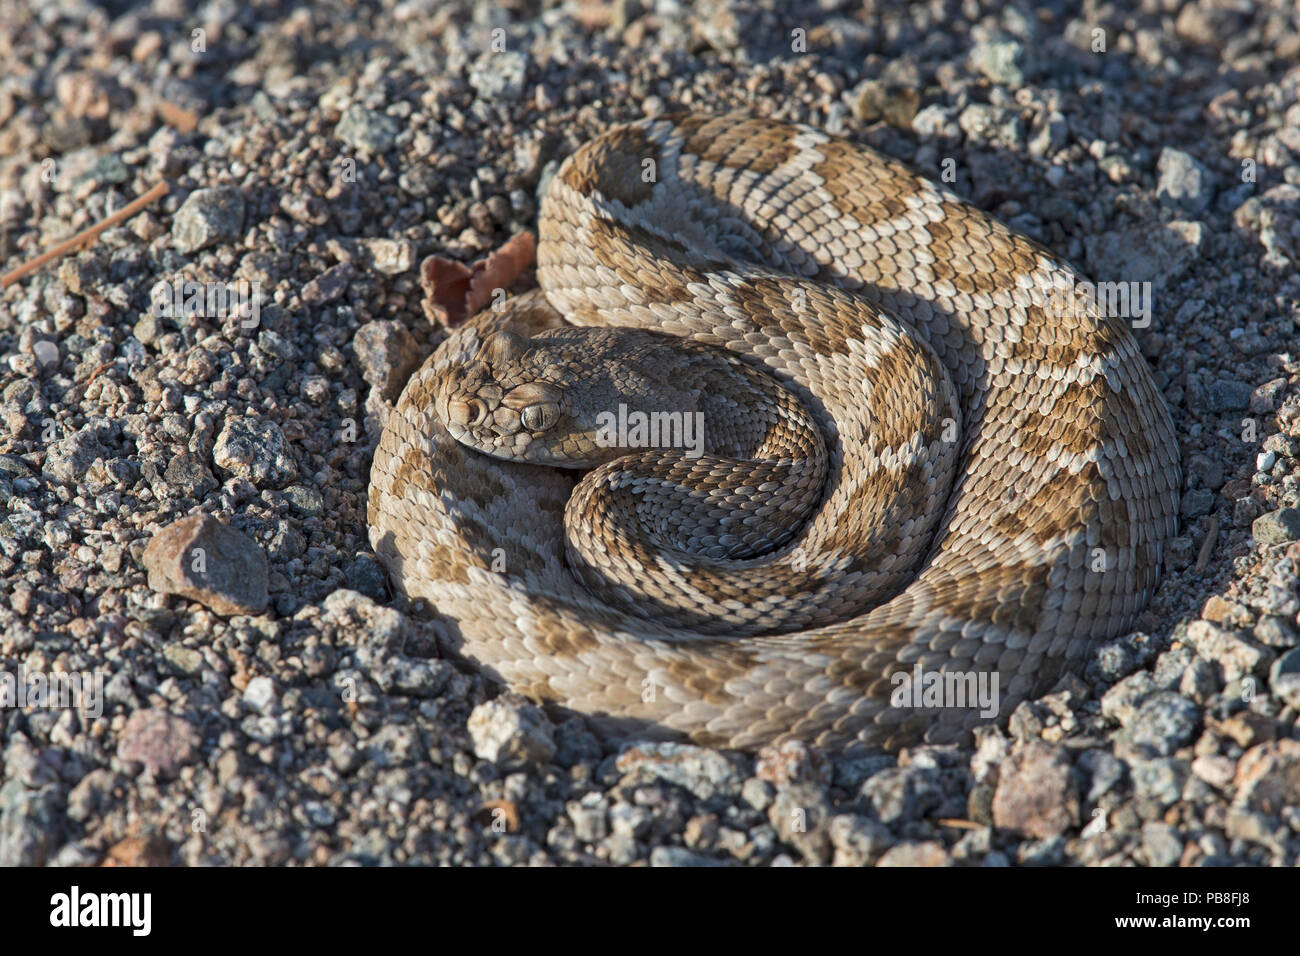 Rattleless / Isla Santa Catalina rattlesnake (Crotalus catalinensis) sono endemiche, marrone fase, Isola di Santa Catalina, Baja California, Messico, specie gravemente minacciate Foto Stock